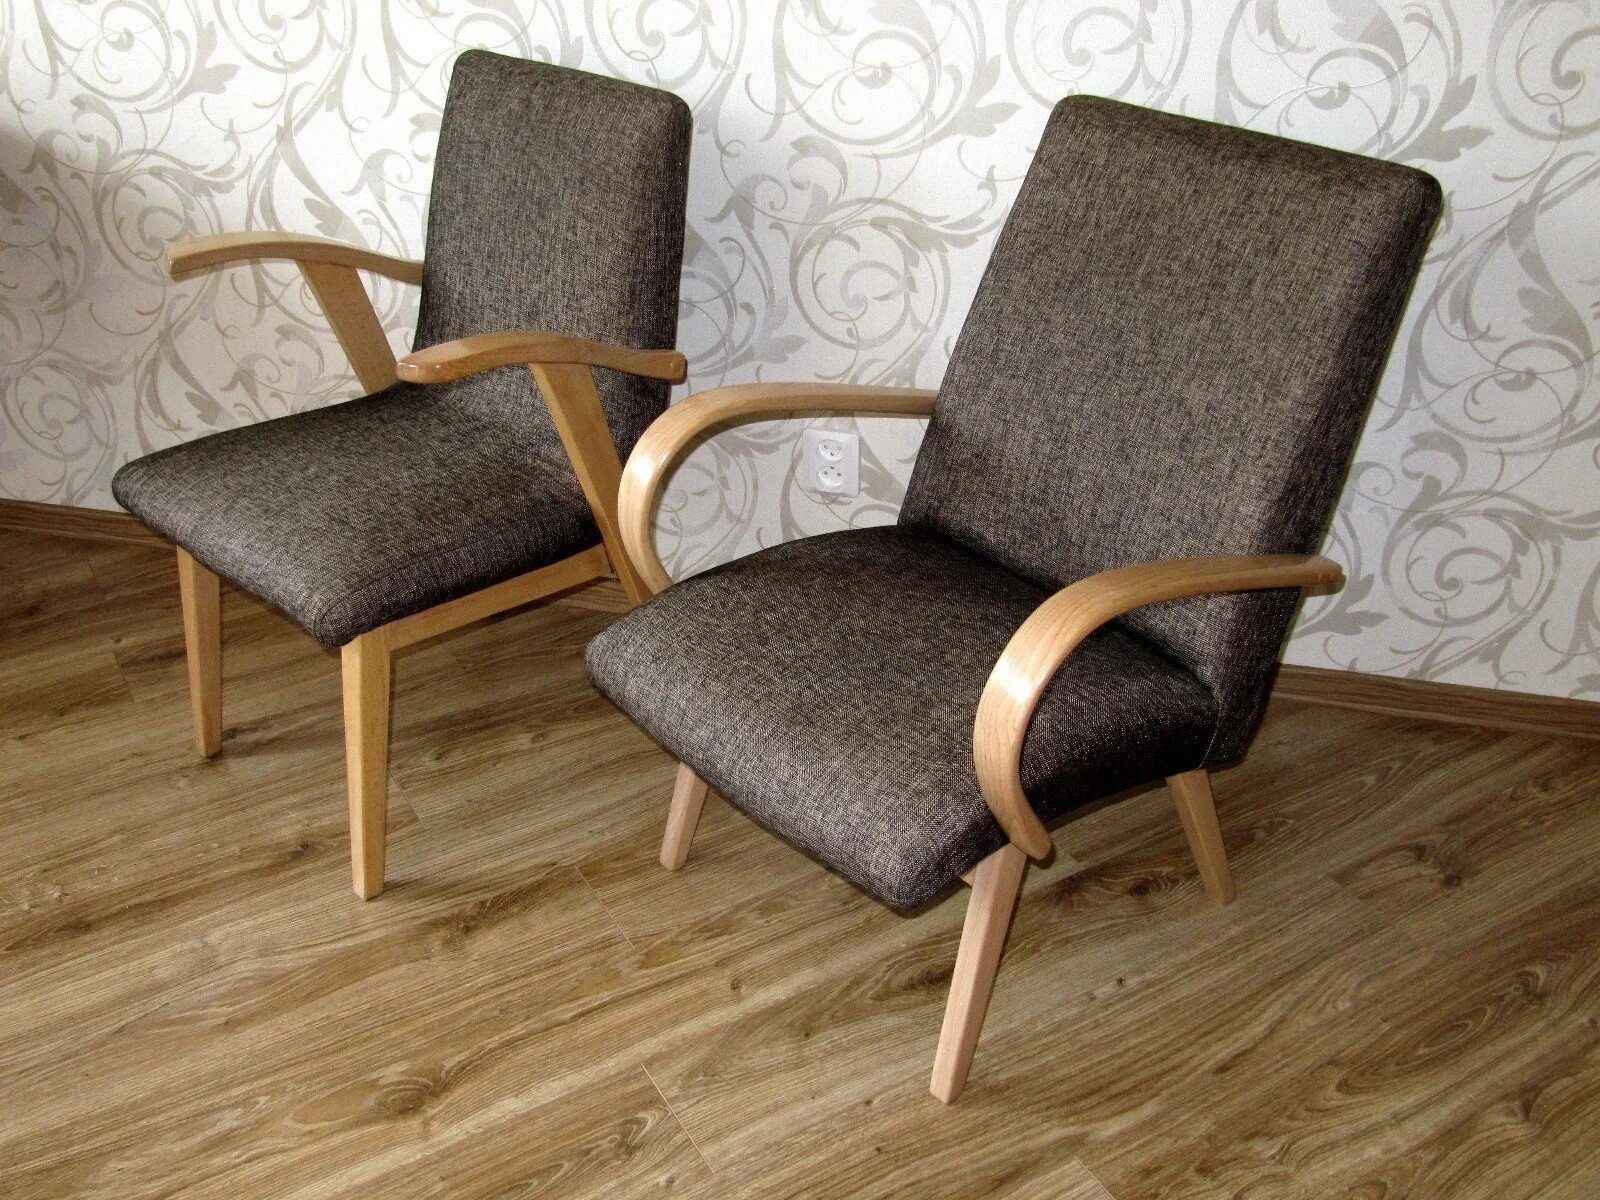 Реставрация сиденья стула. Кресло Миер Топольчаны. Старое советское кресло. Кресло с деревянными подлокотниками. Реставрируем старое кресло.